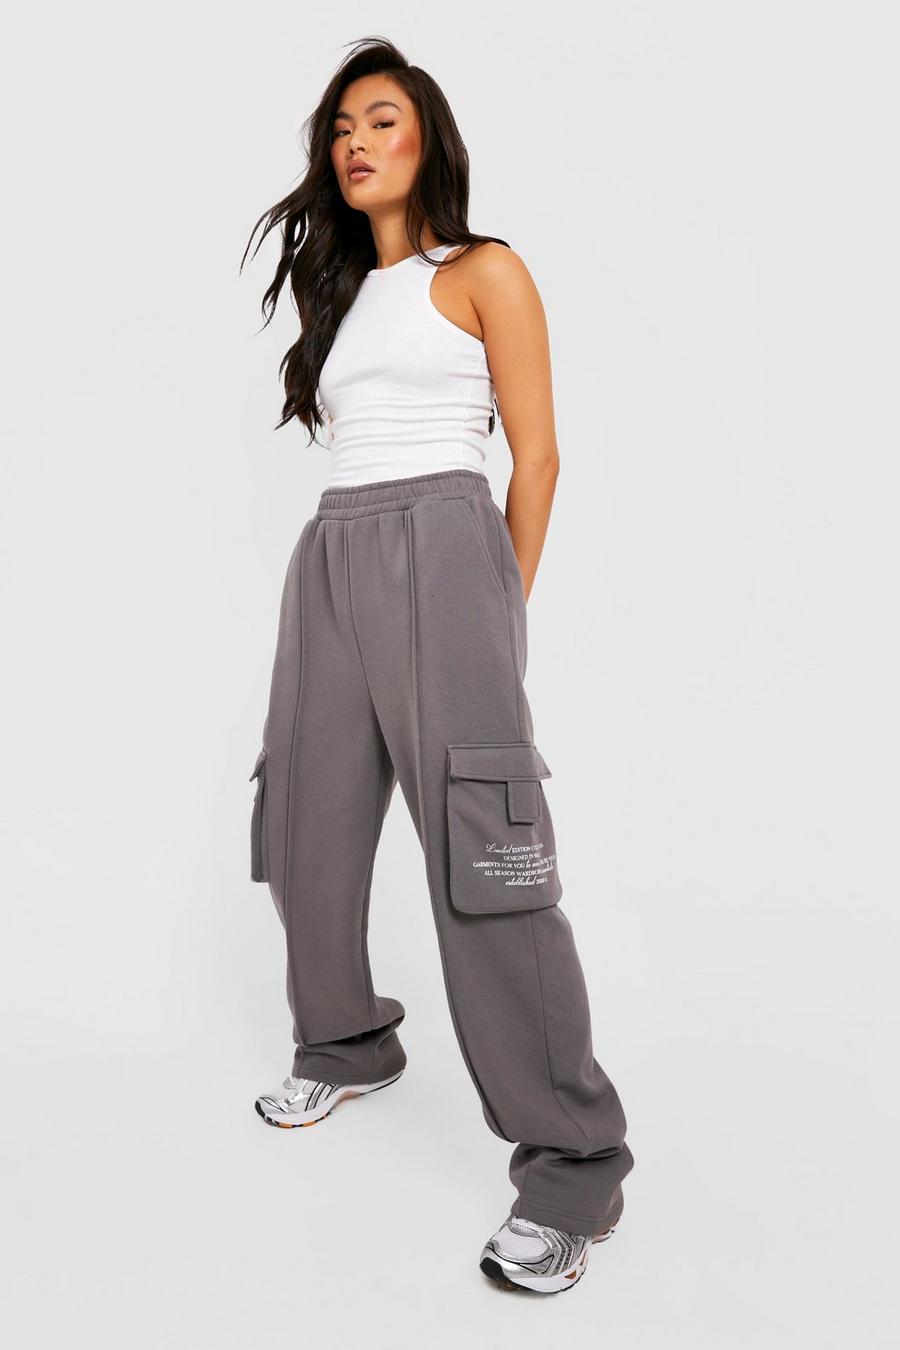 Pantalón deportivo cargo con estampado de texto y pernera ancha, Charcoal grigio